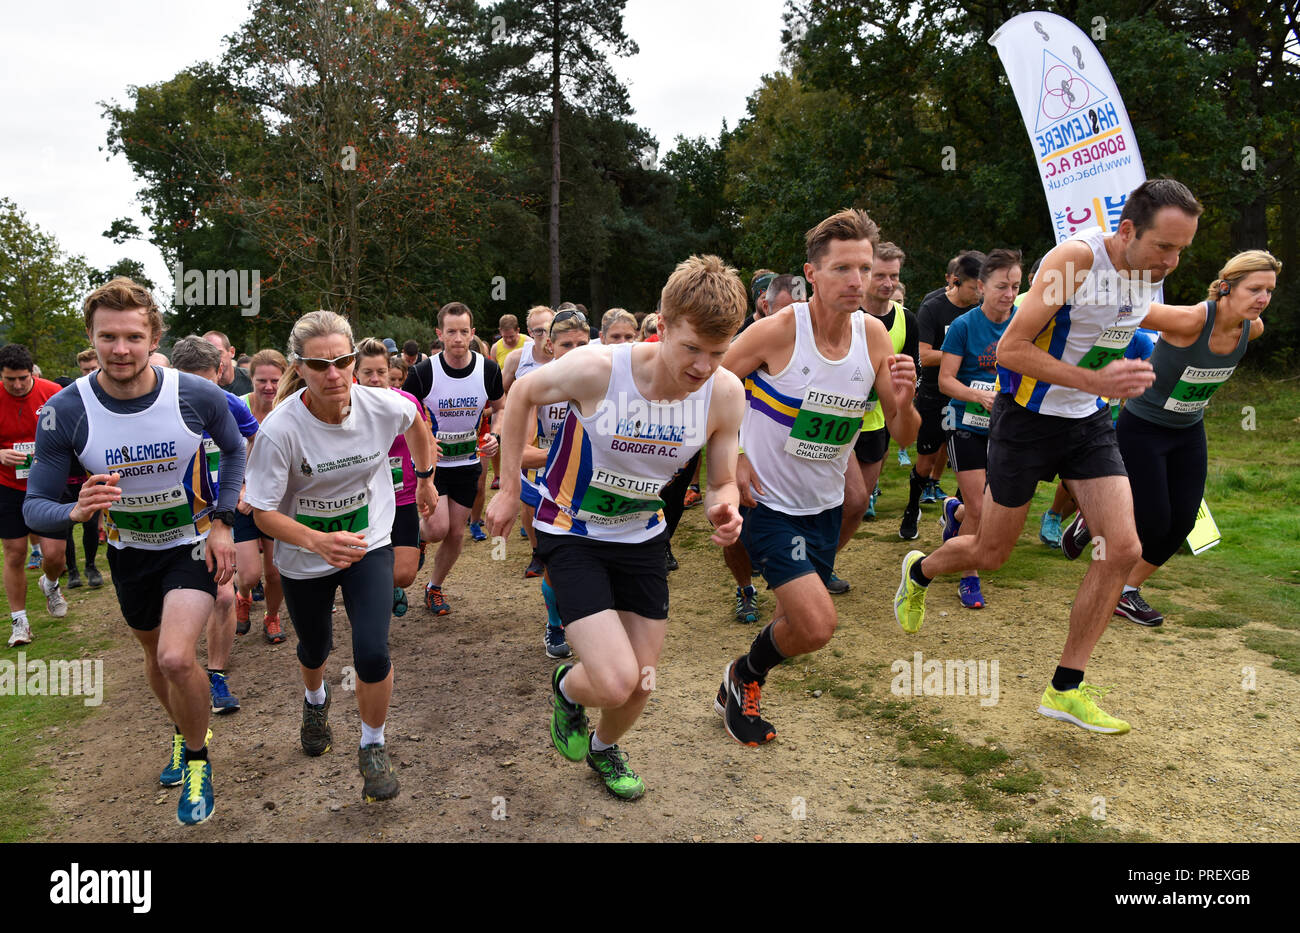 Les Concurrents prenant part à un 10km course cross-country race, Hindhead, Surrey. Dimanche 30 septembre 2018. Banque D'Images